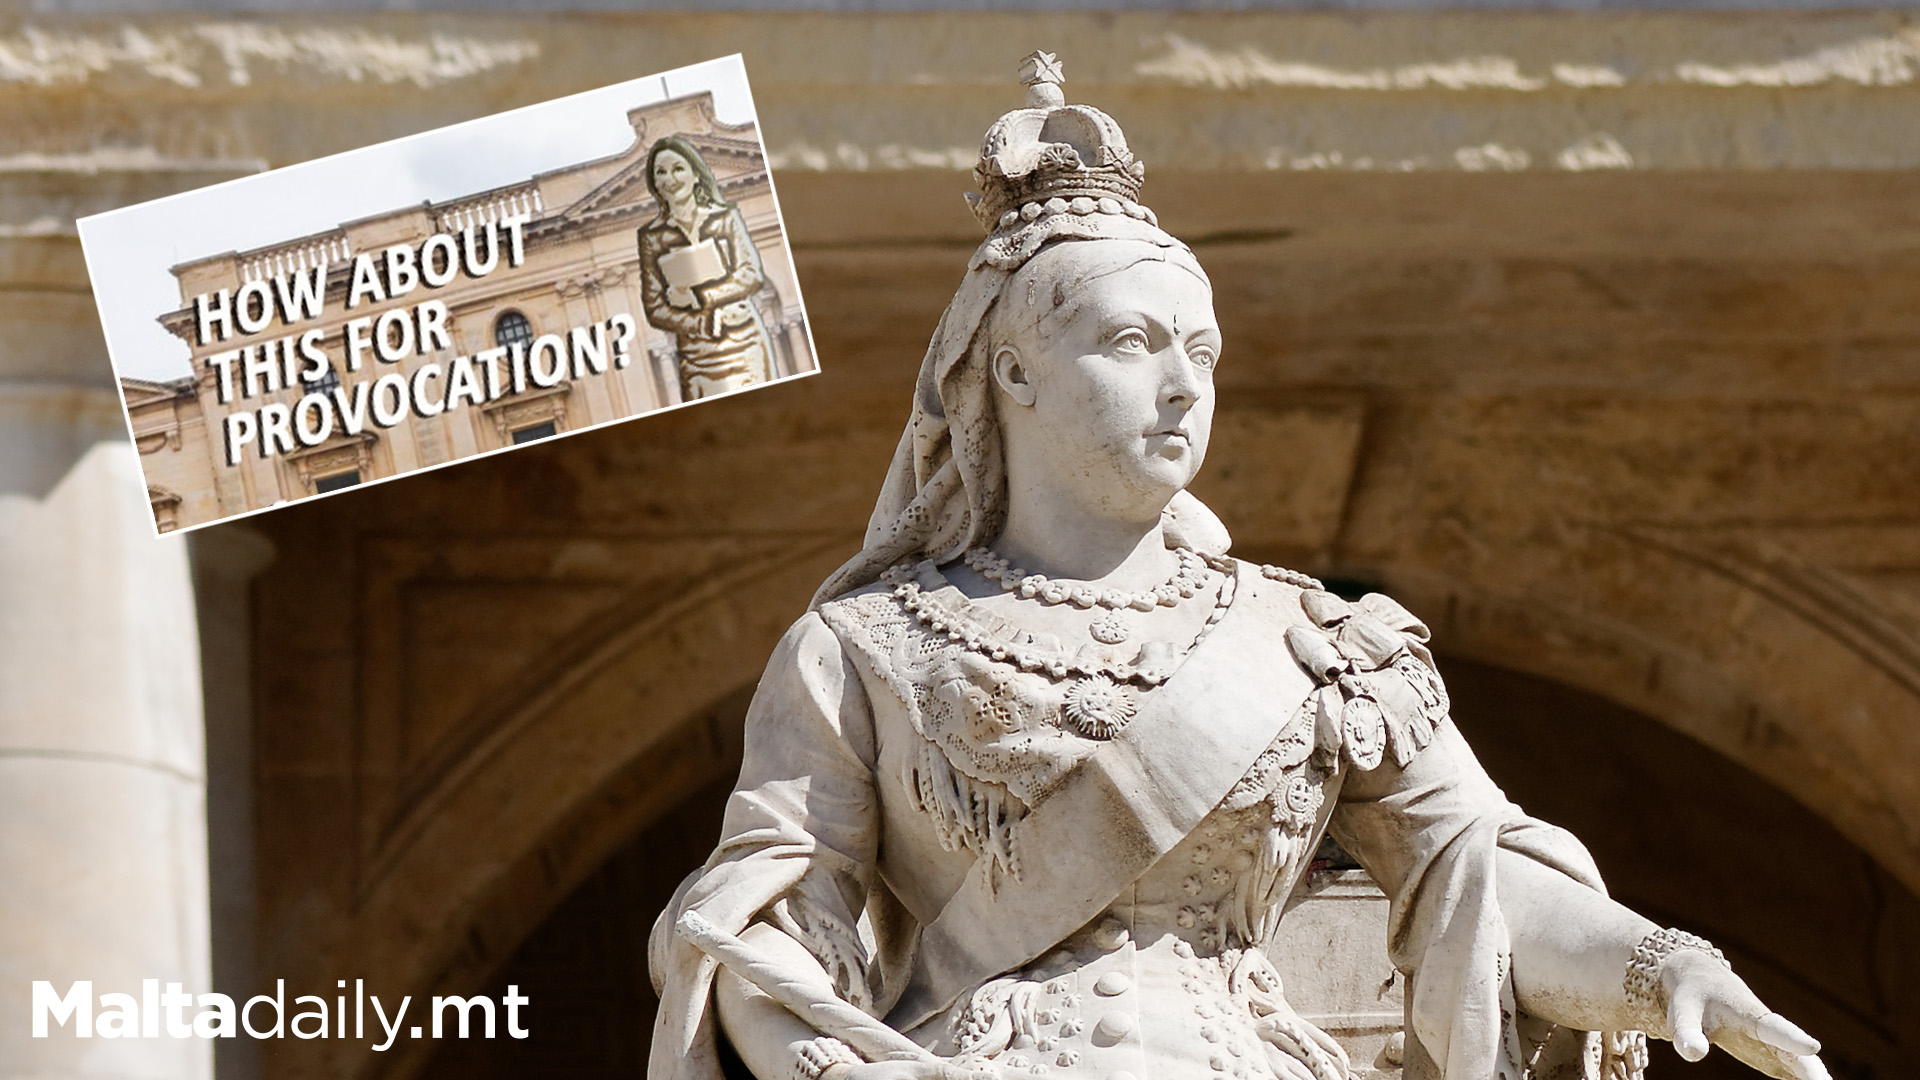 Salvu Mallia Suggests Swapping Queen Victoria Statue With Daphne Caruana Galizia